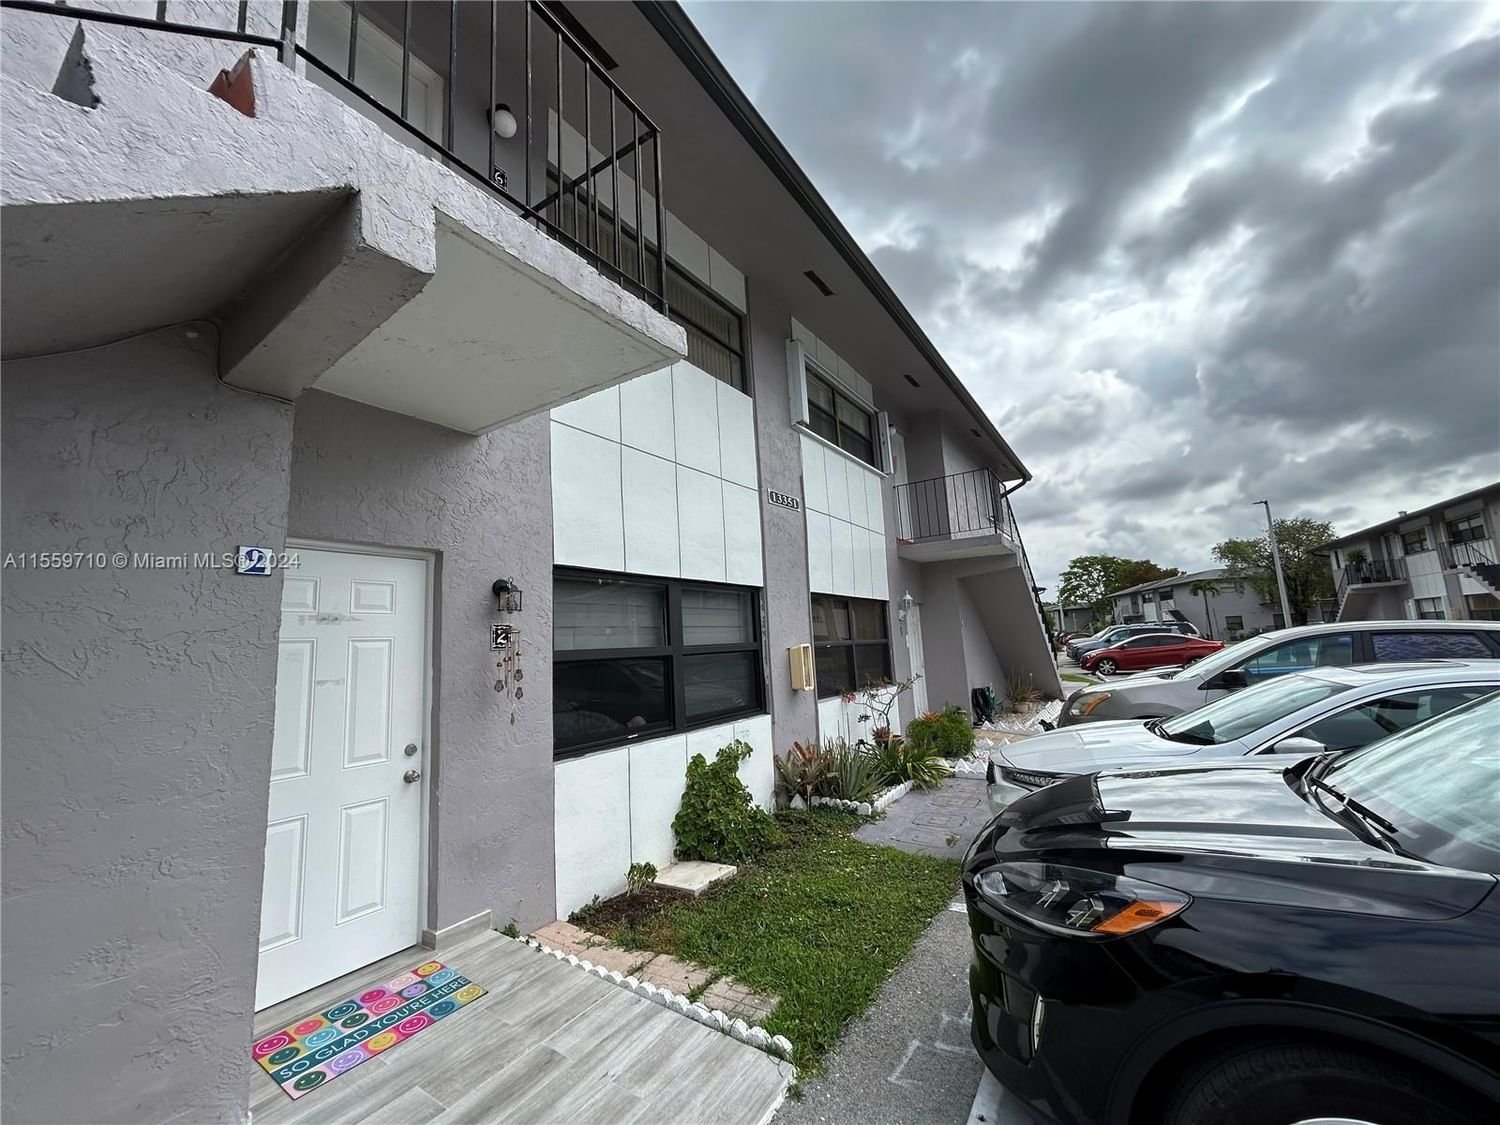 Real estate property located at 13351 17th Ln #3-2, Miami-Dade County, PLAYA LAGO CONDO PH II, Miami, FL